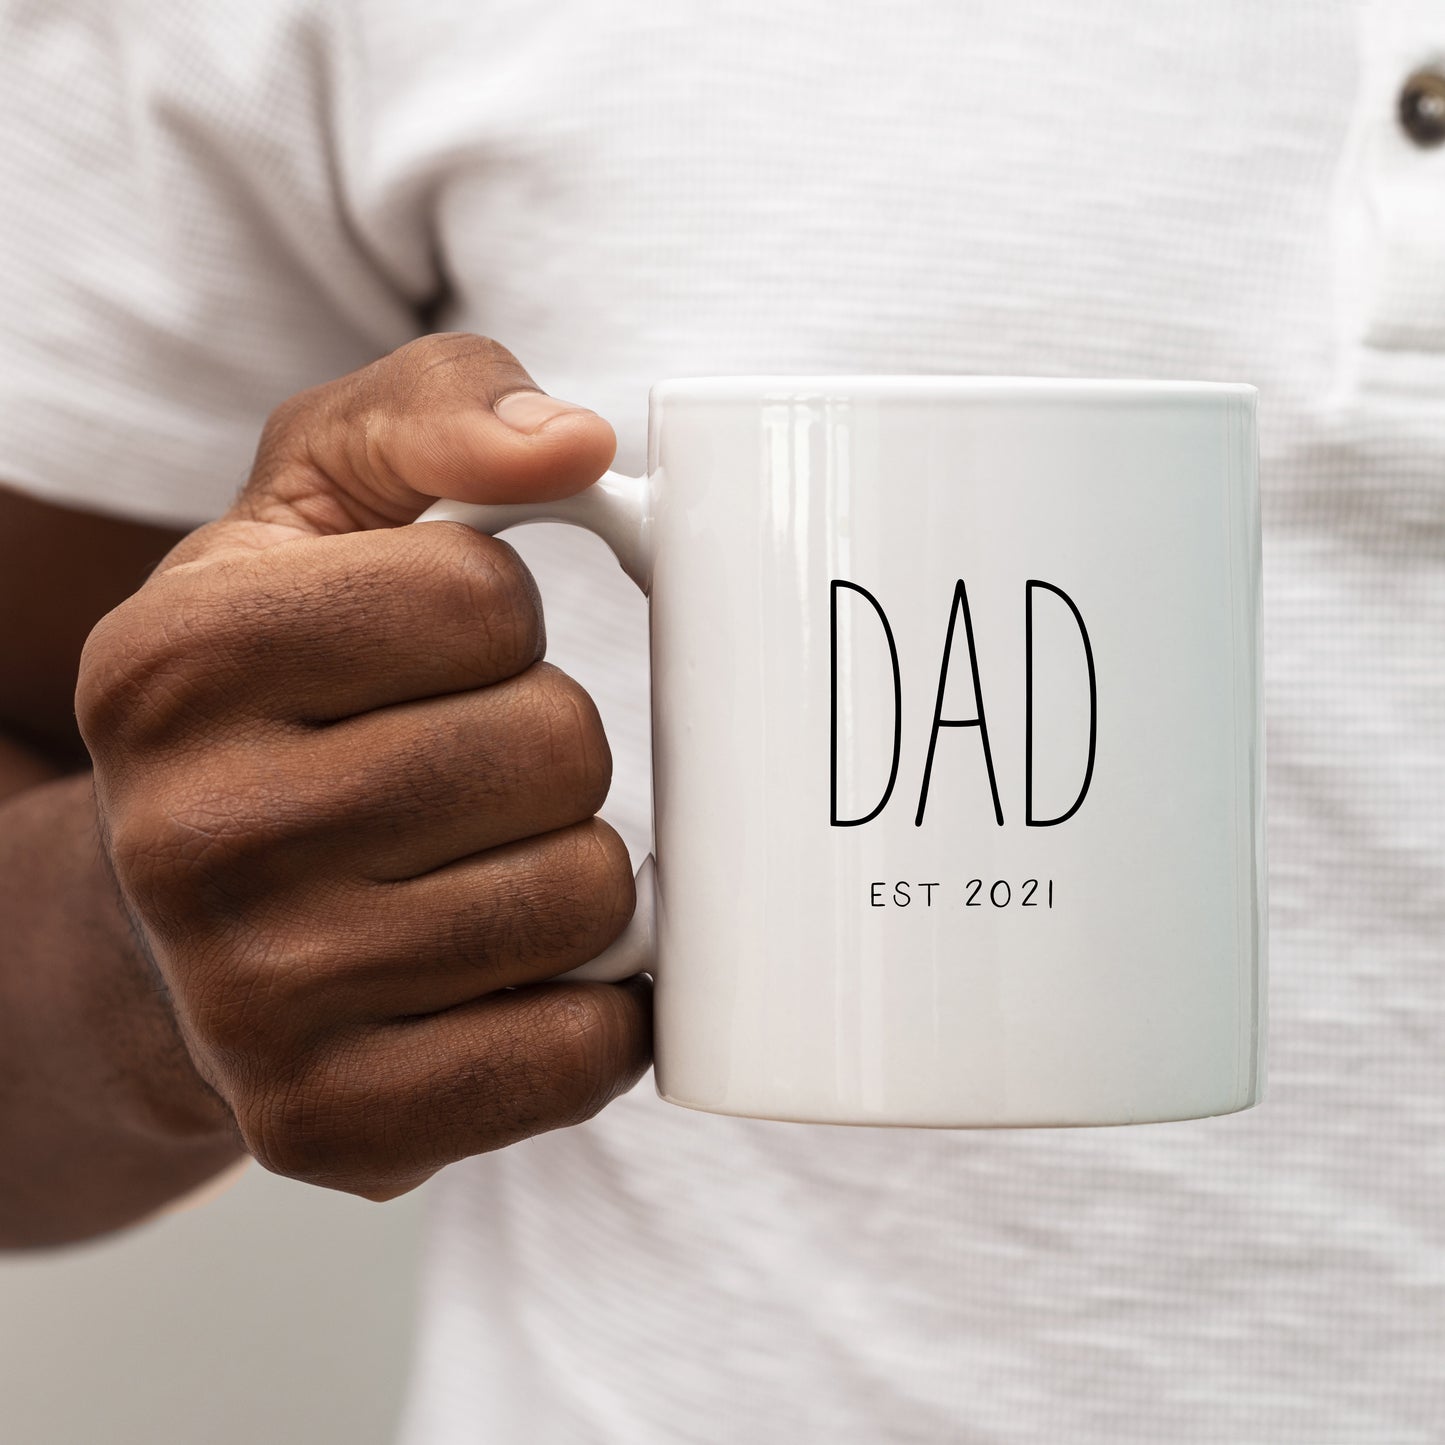 Dad EST 2021 Mug